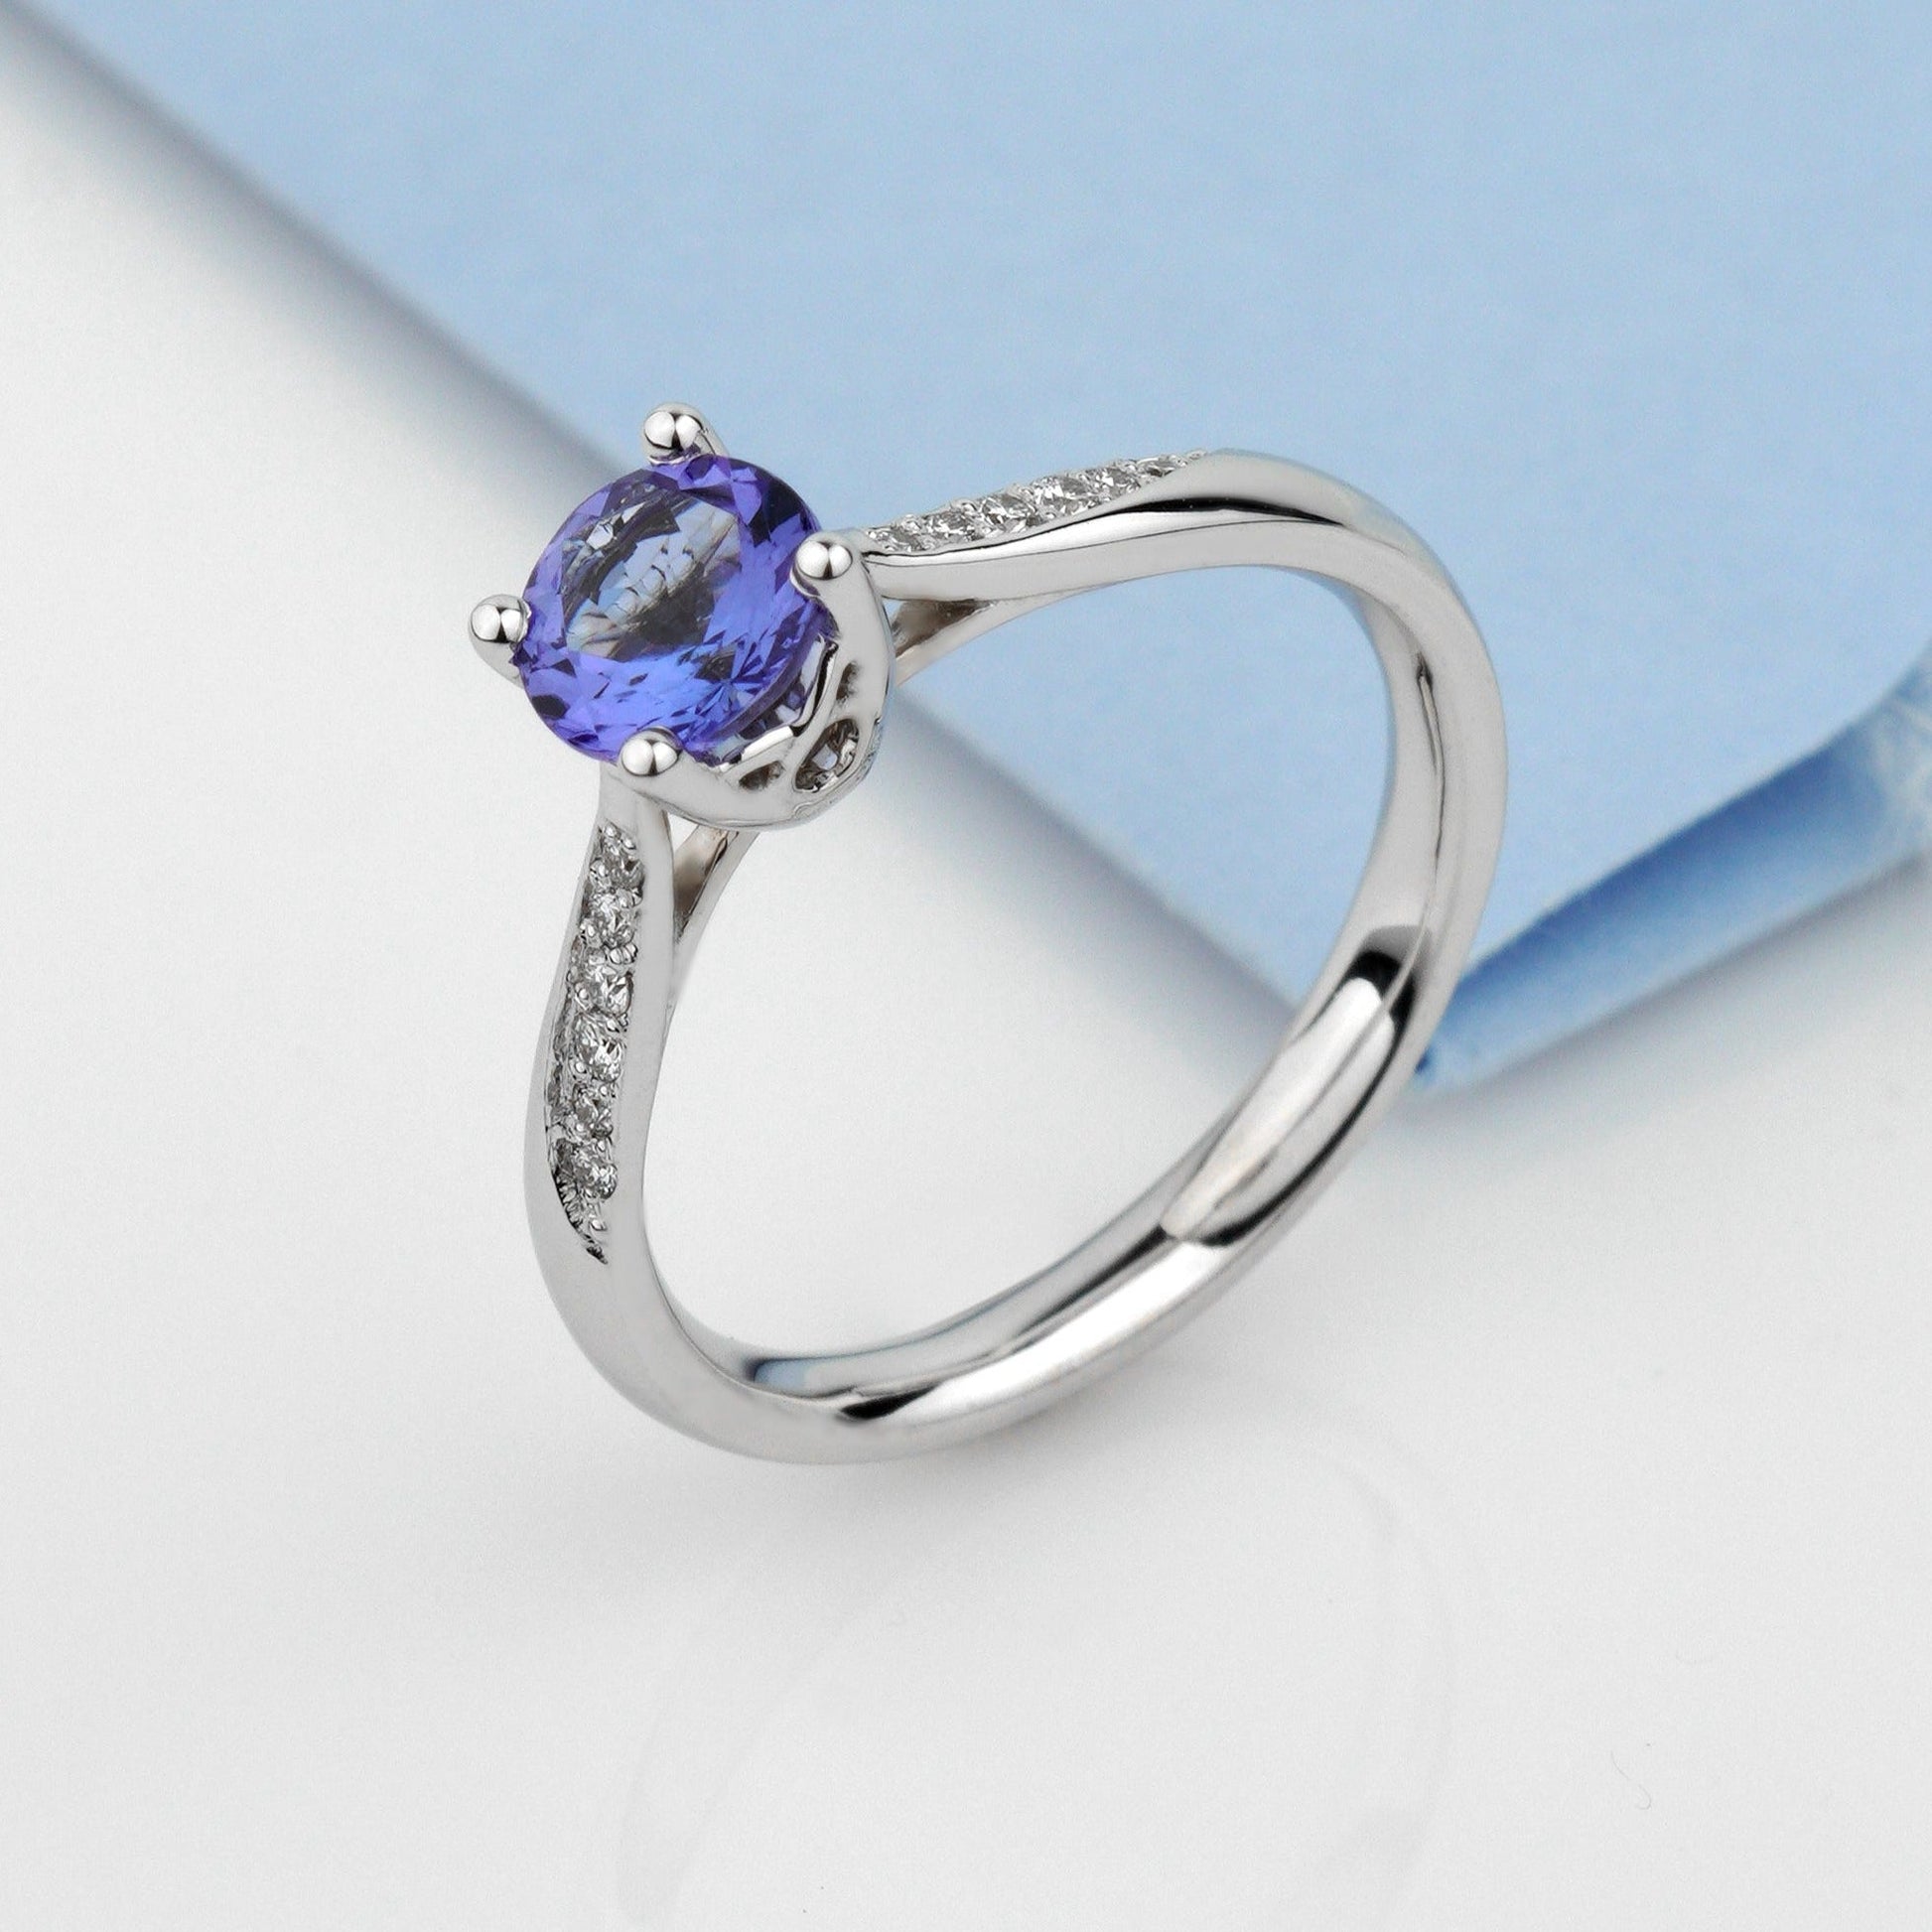 Engagement ring with tanzanite and diamonds - escorialjewelry